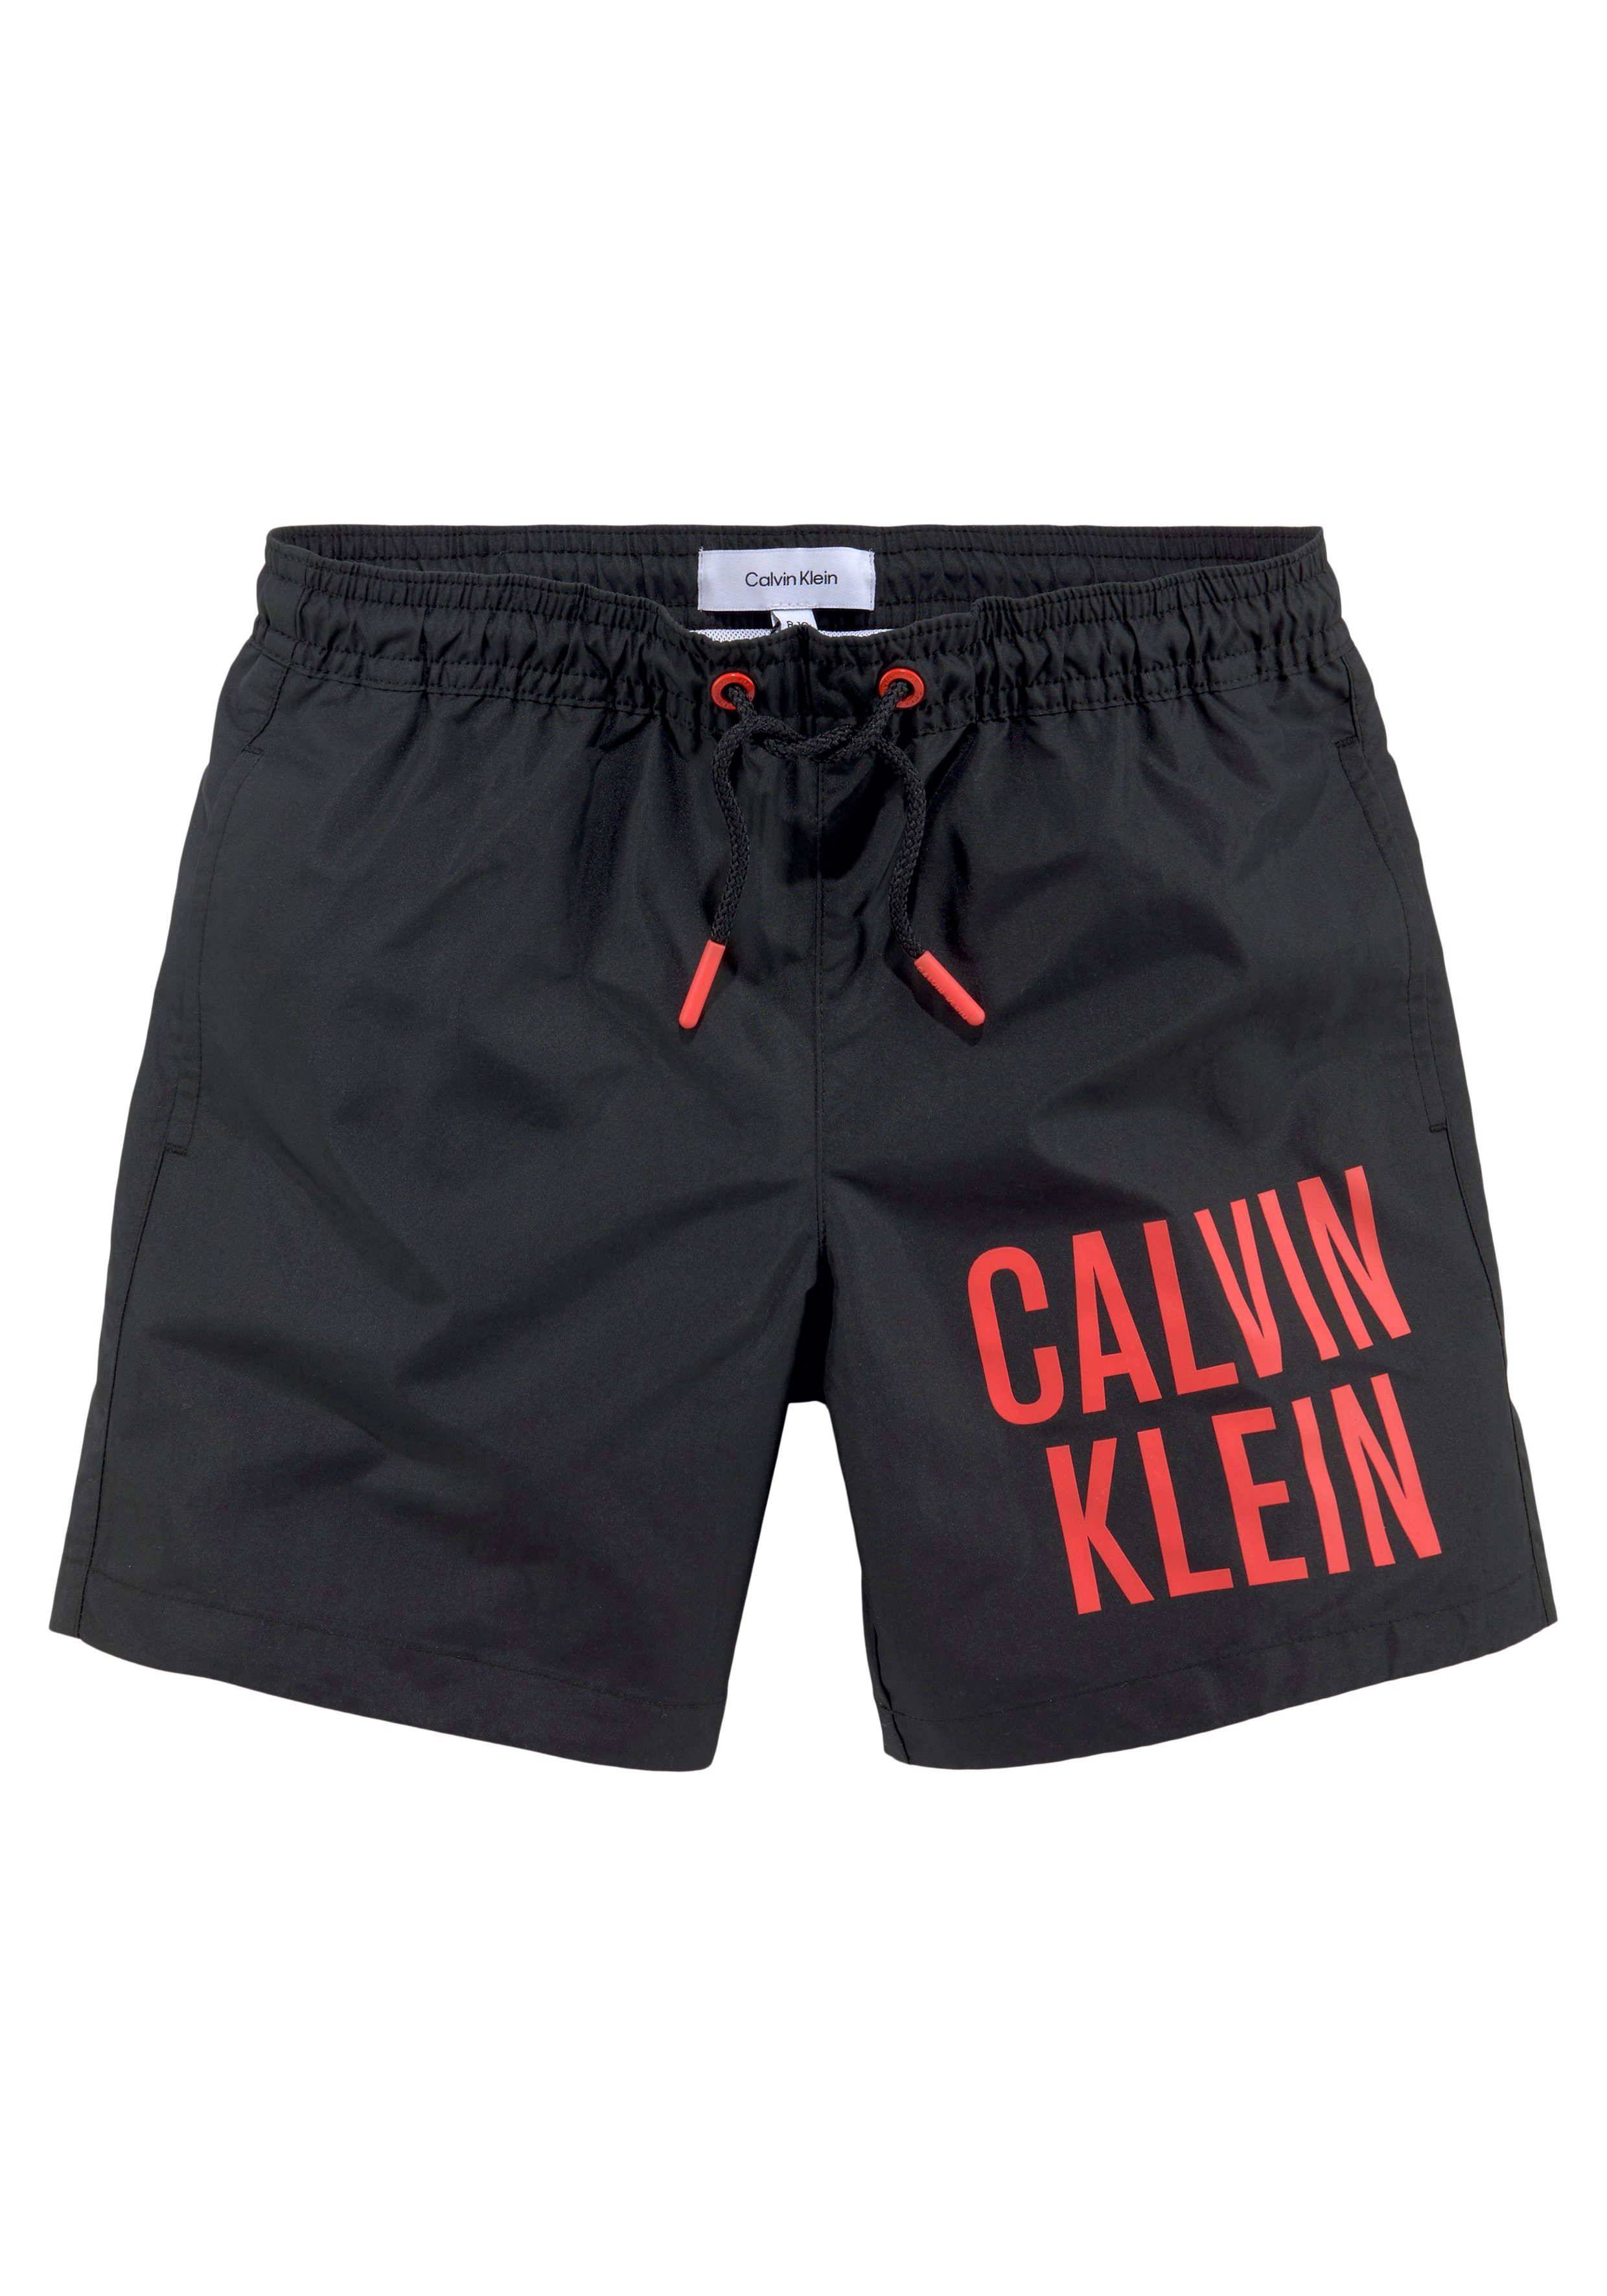 DRAWSTRING Badeshorts Calvin Schriftzug Klein Pvh-Black Klein Calvin mit Swimwear MEDIUM